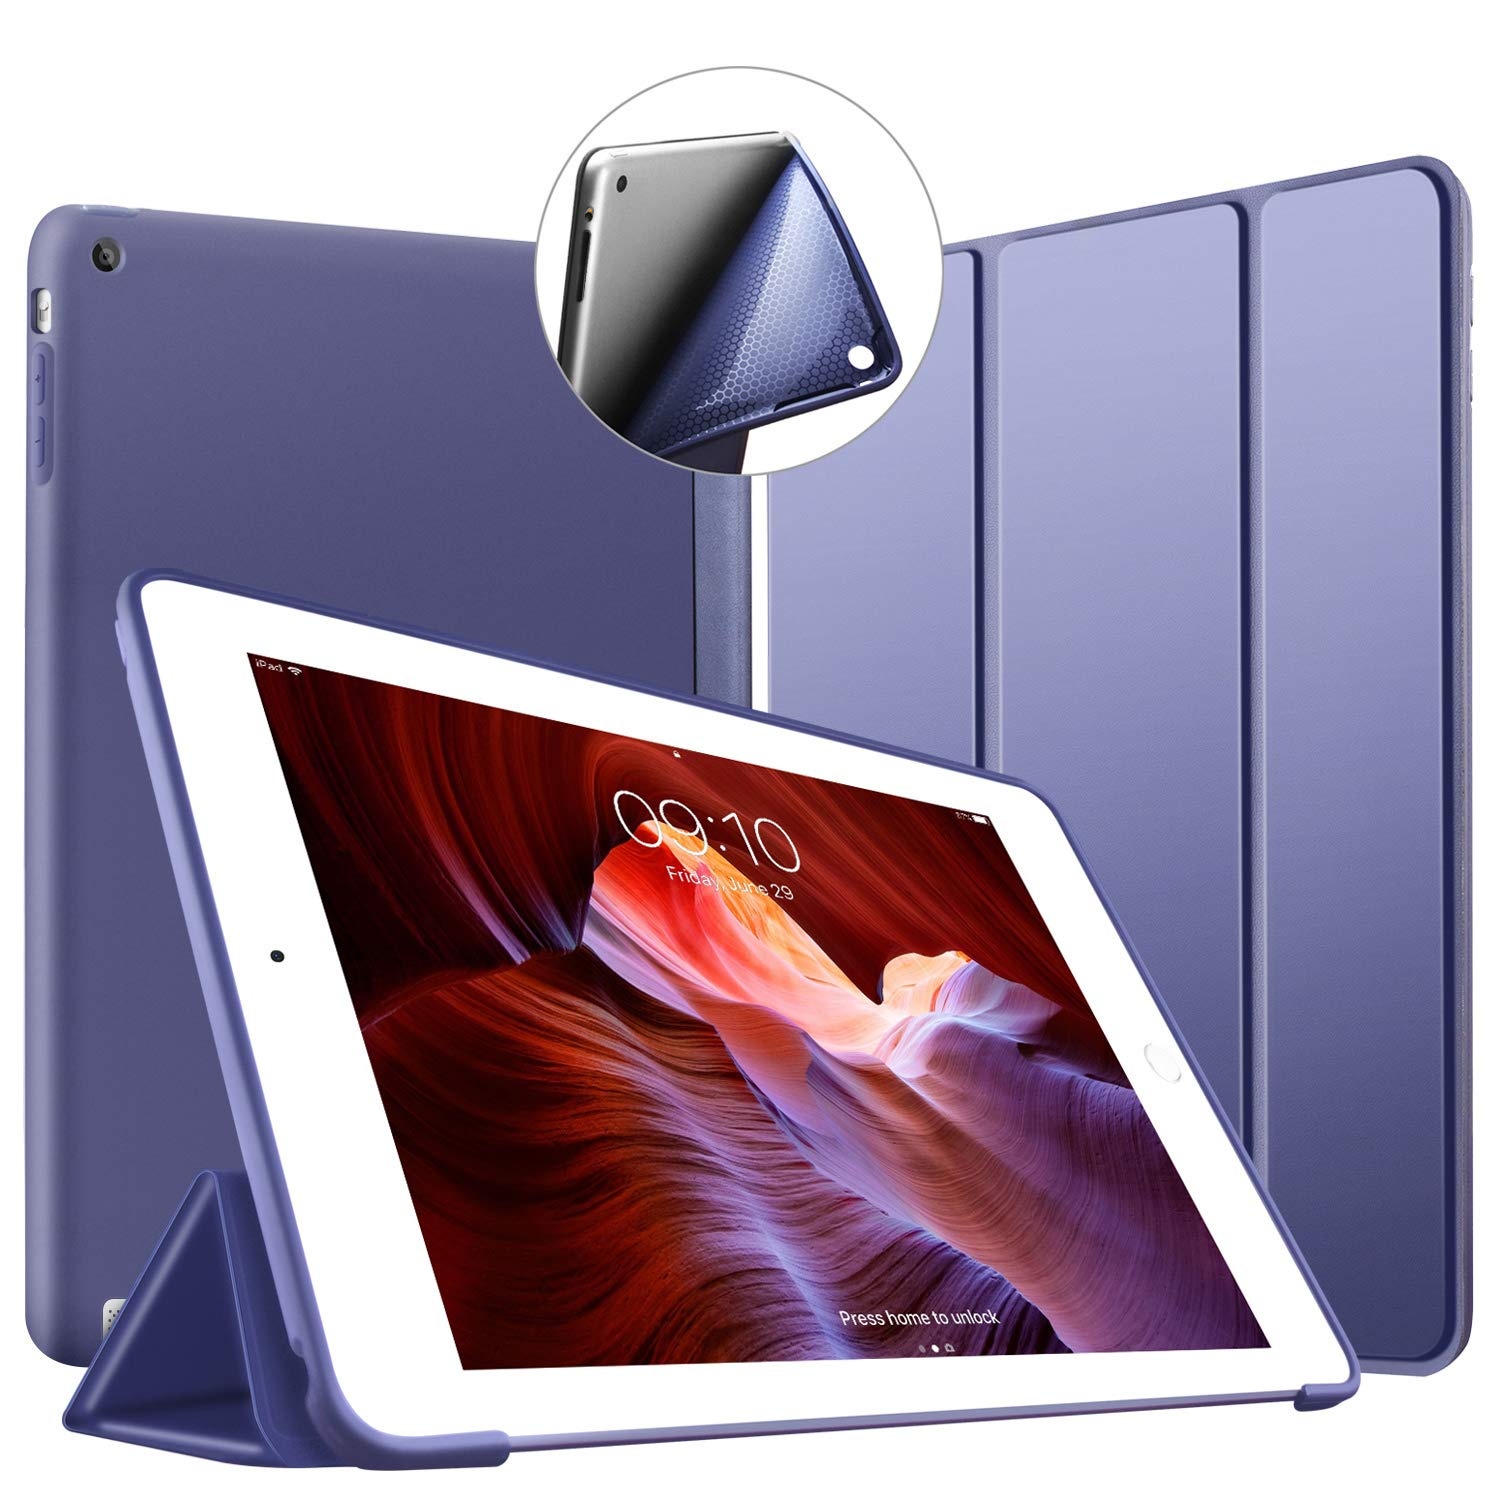 VAGHVEO Hülle für iPad 2/3/ 4 Dünne Leichtgewicht Ständer Schutzhülle [Auto Schlafen/Wecken] mit Flexibel Weicher TPU Rückseite Cover Leder Hüllen für Apple iPad 2/ iPad 3/ iPad 4 Retina, Marine Blau